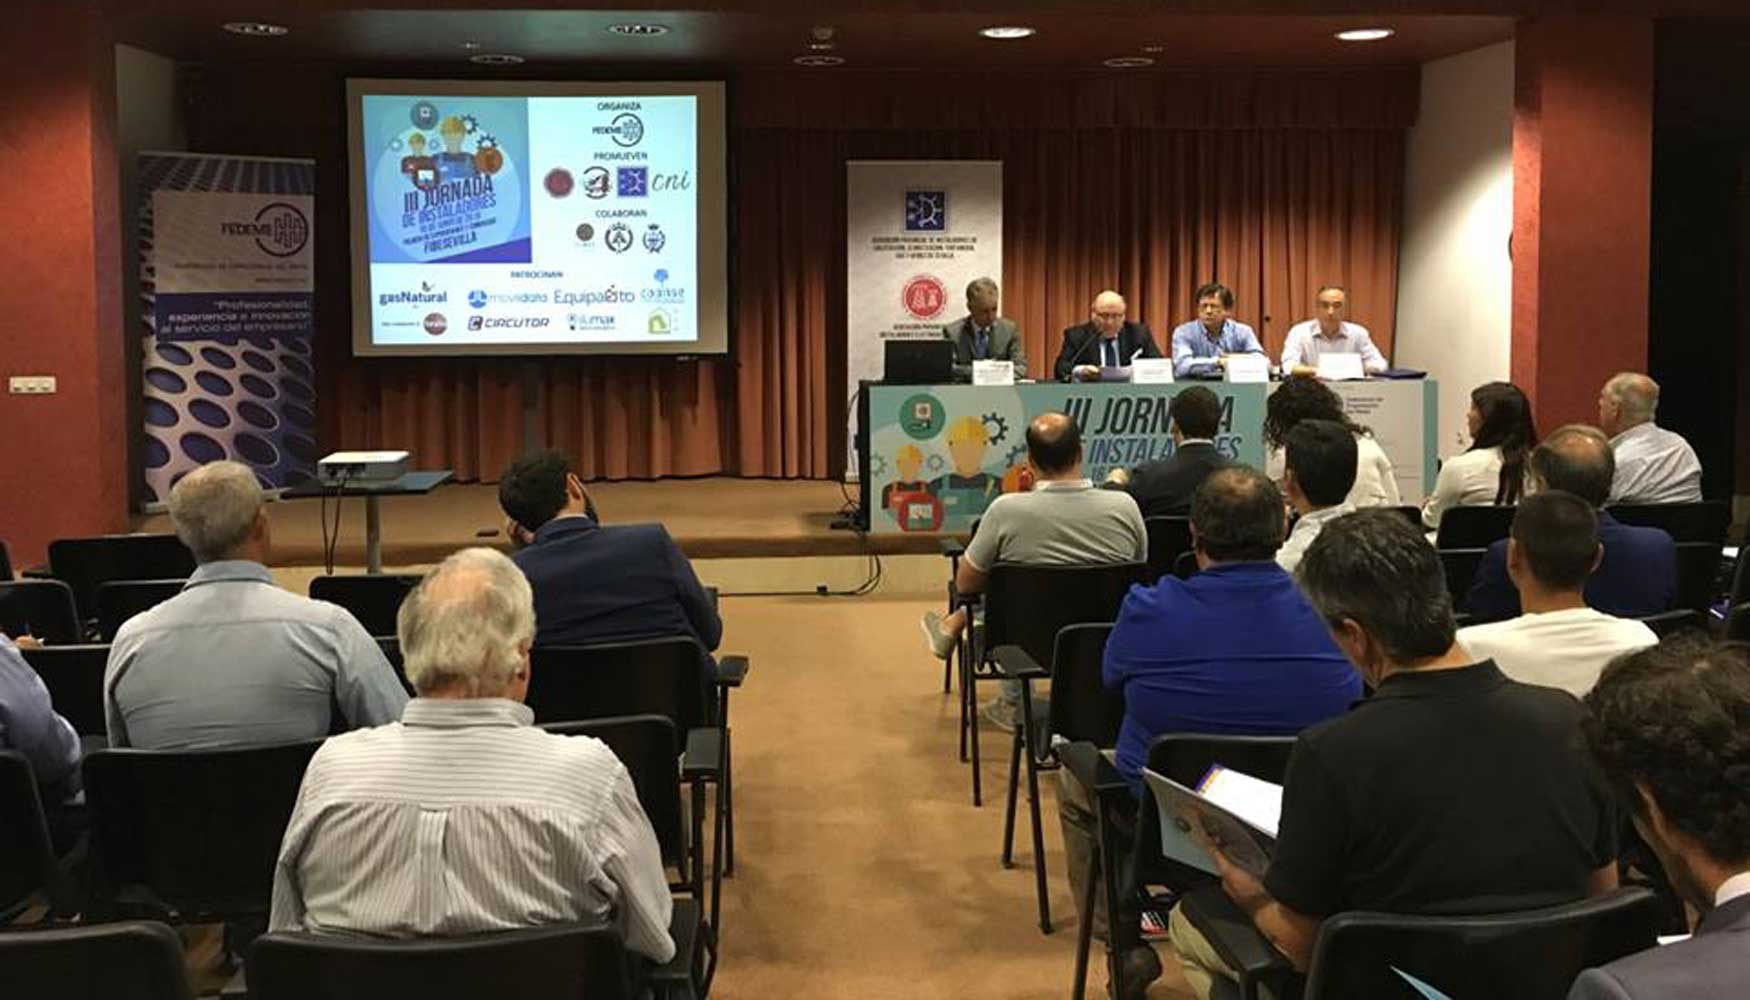 La III Jornada de Instaladores de Sevilla ha vuelto a poner al alcance de los profesionales informacin actualizada sobre temas de inters y sobre...